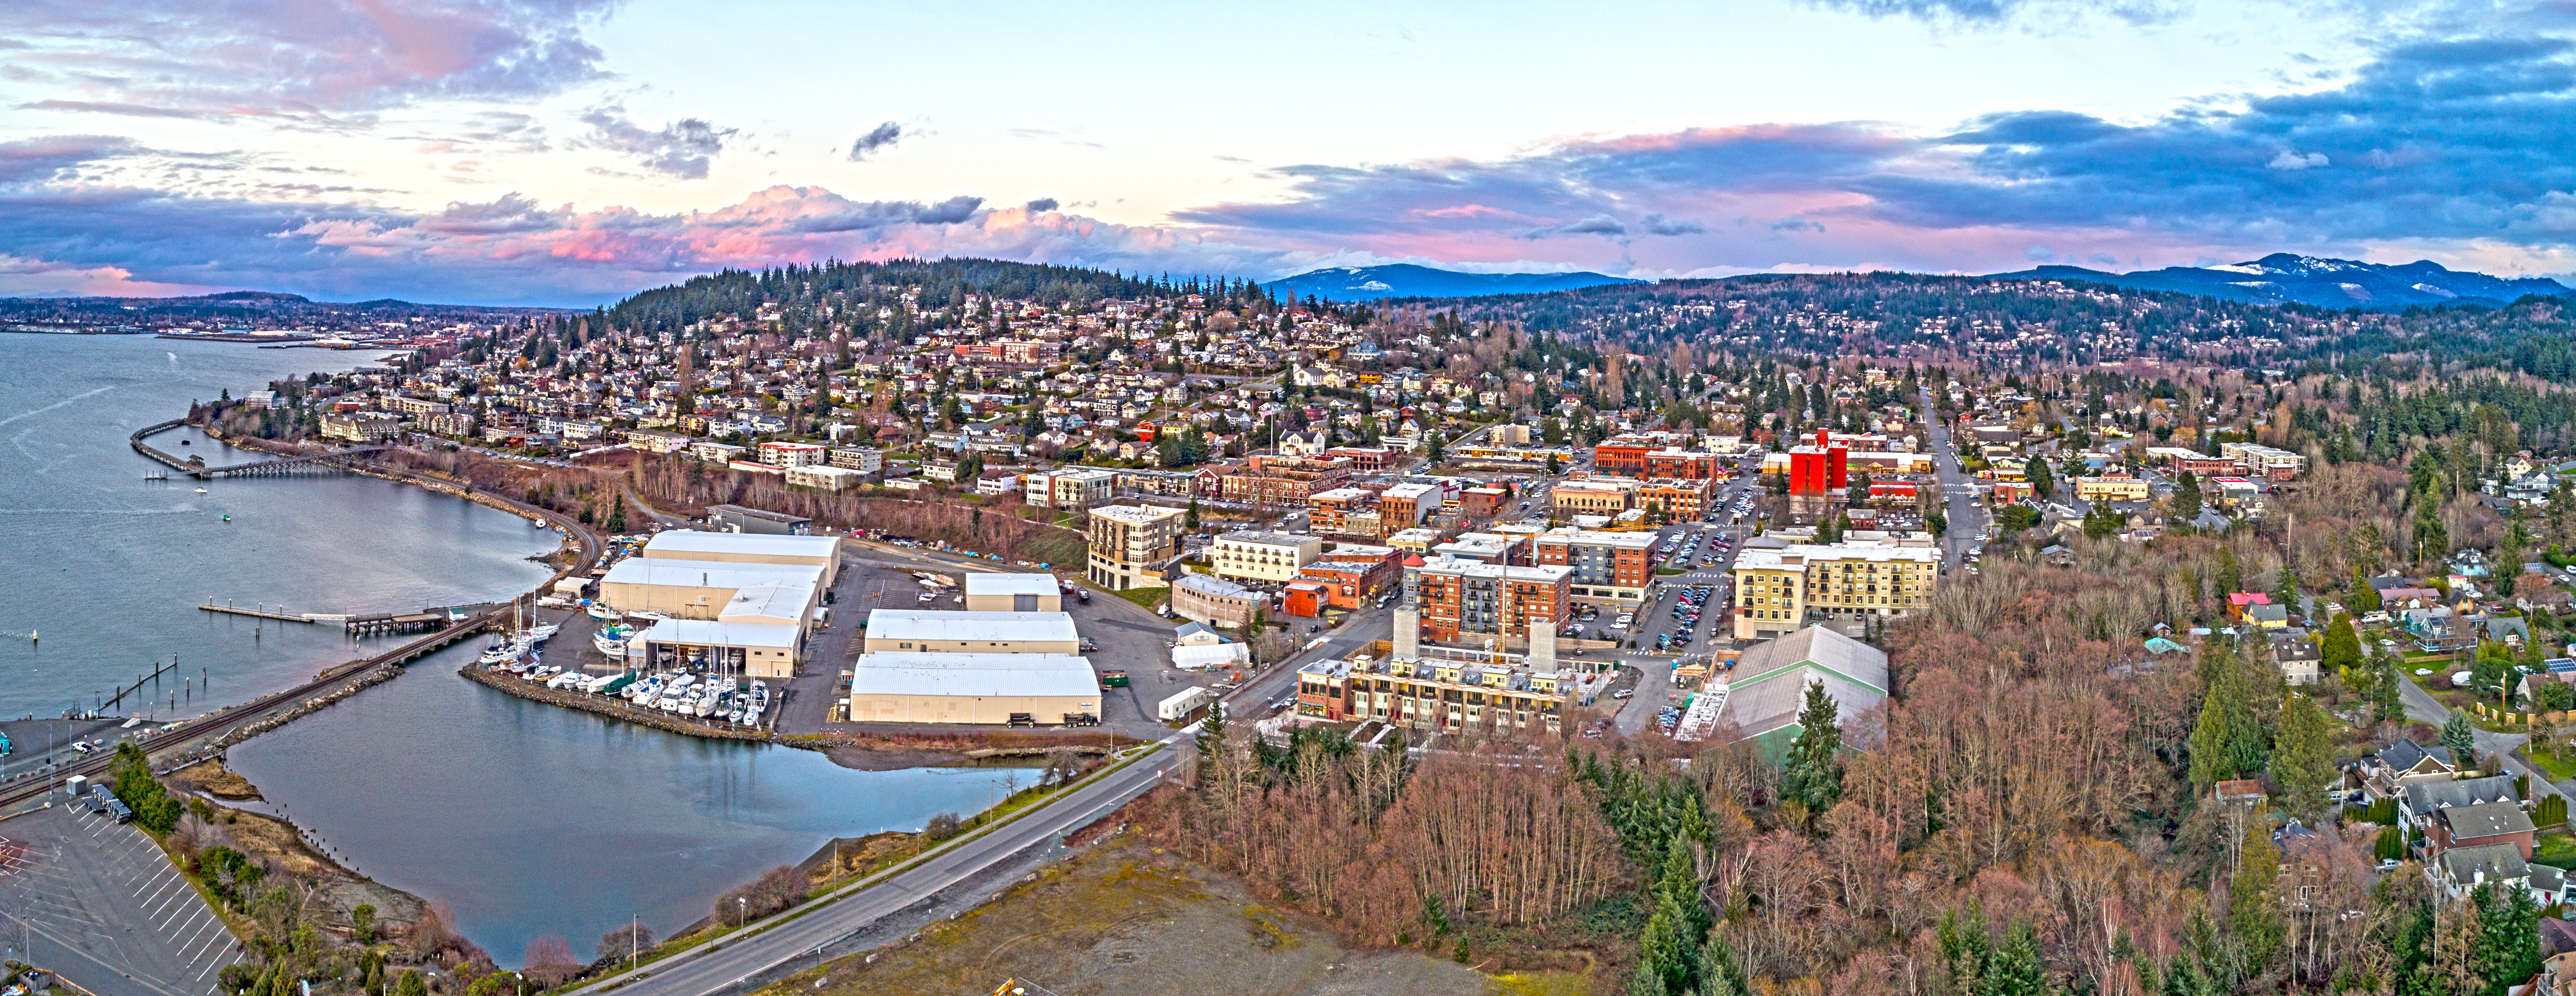 Getaway in Washington, aerial photo of Bellingham 